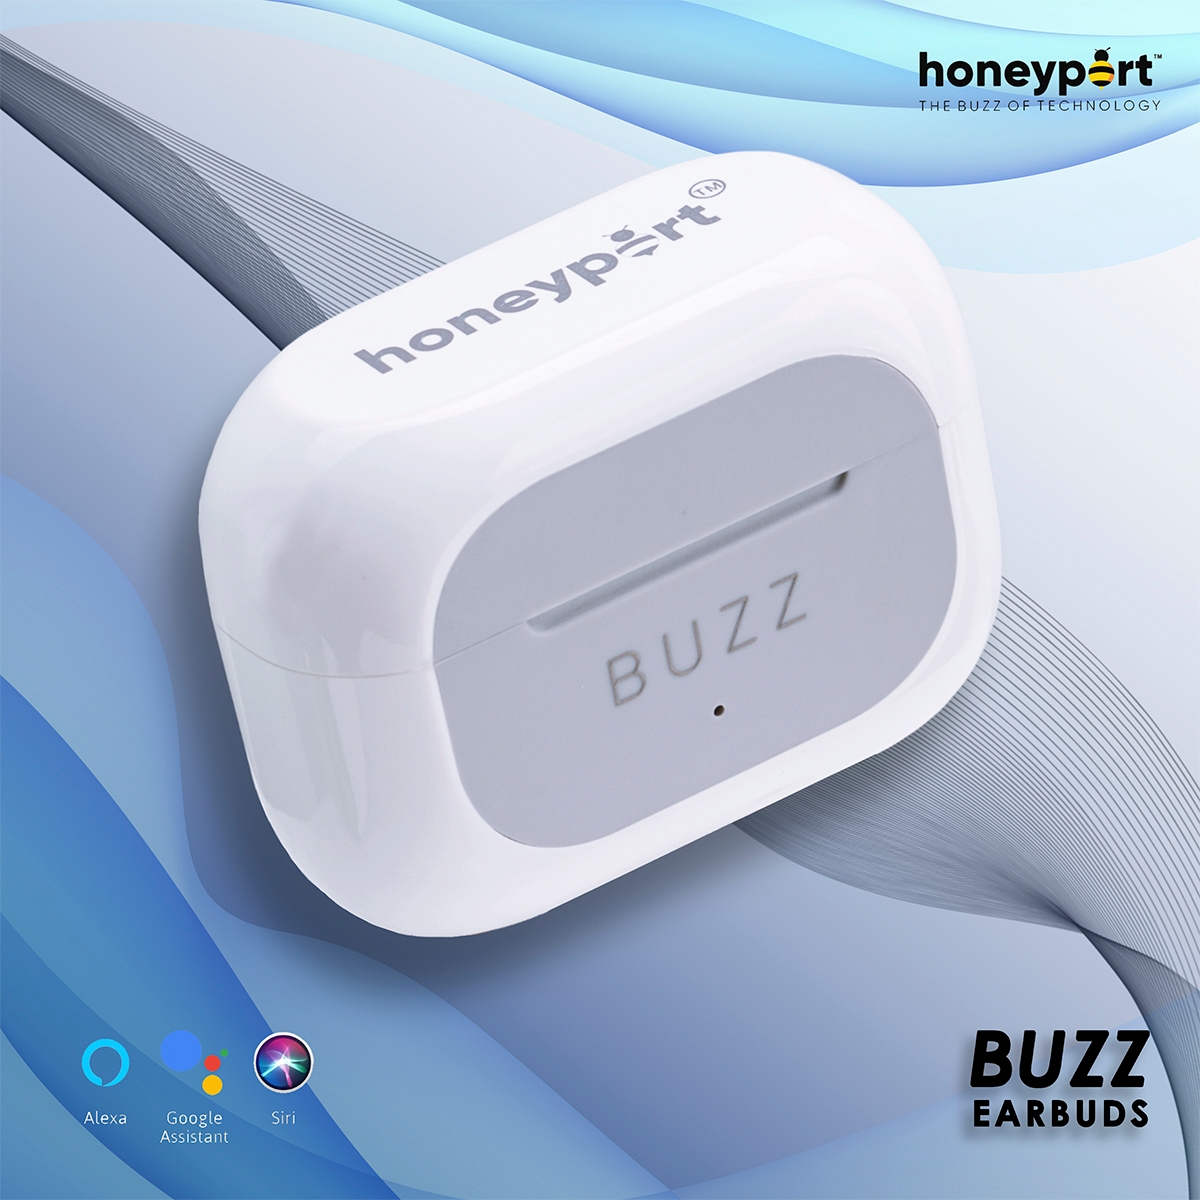 Honeyport- THE BUZZ OF TECHNOLOGY | Buzz